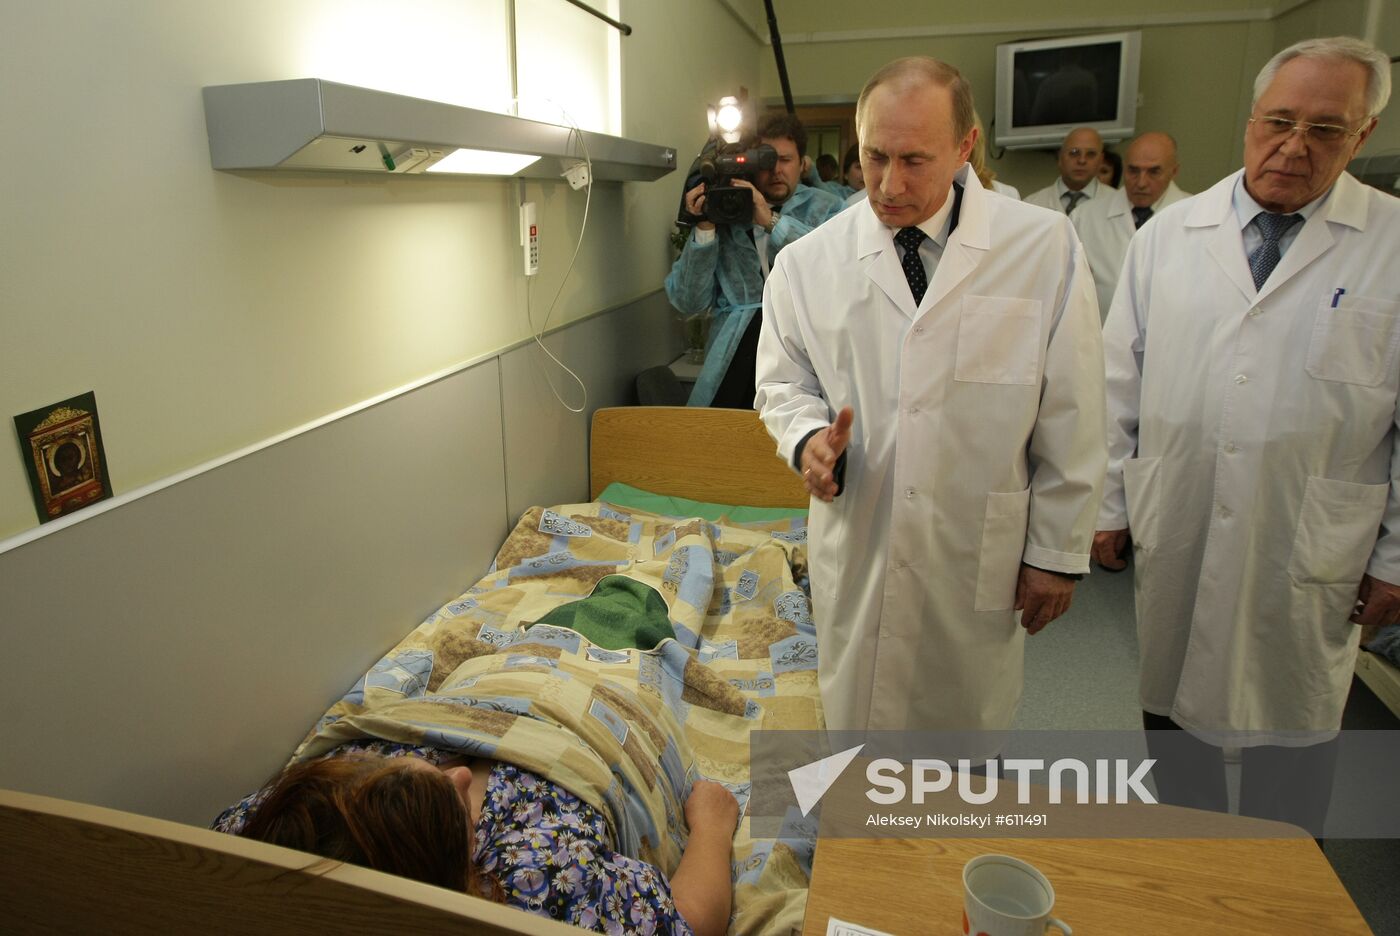 Vladimir Putin visits injured in hospital